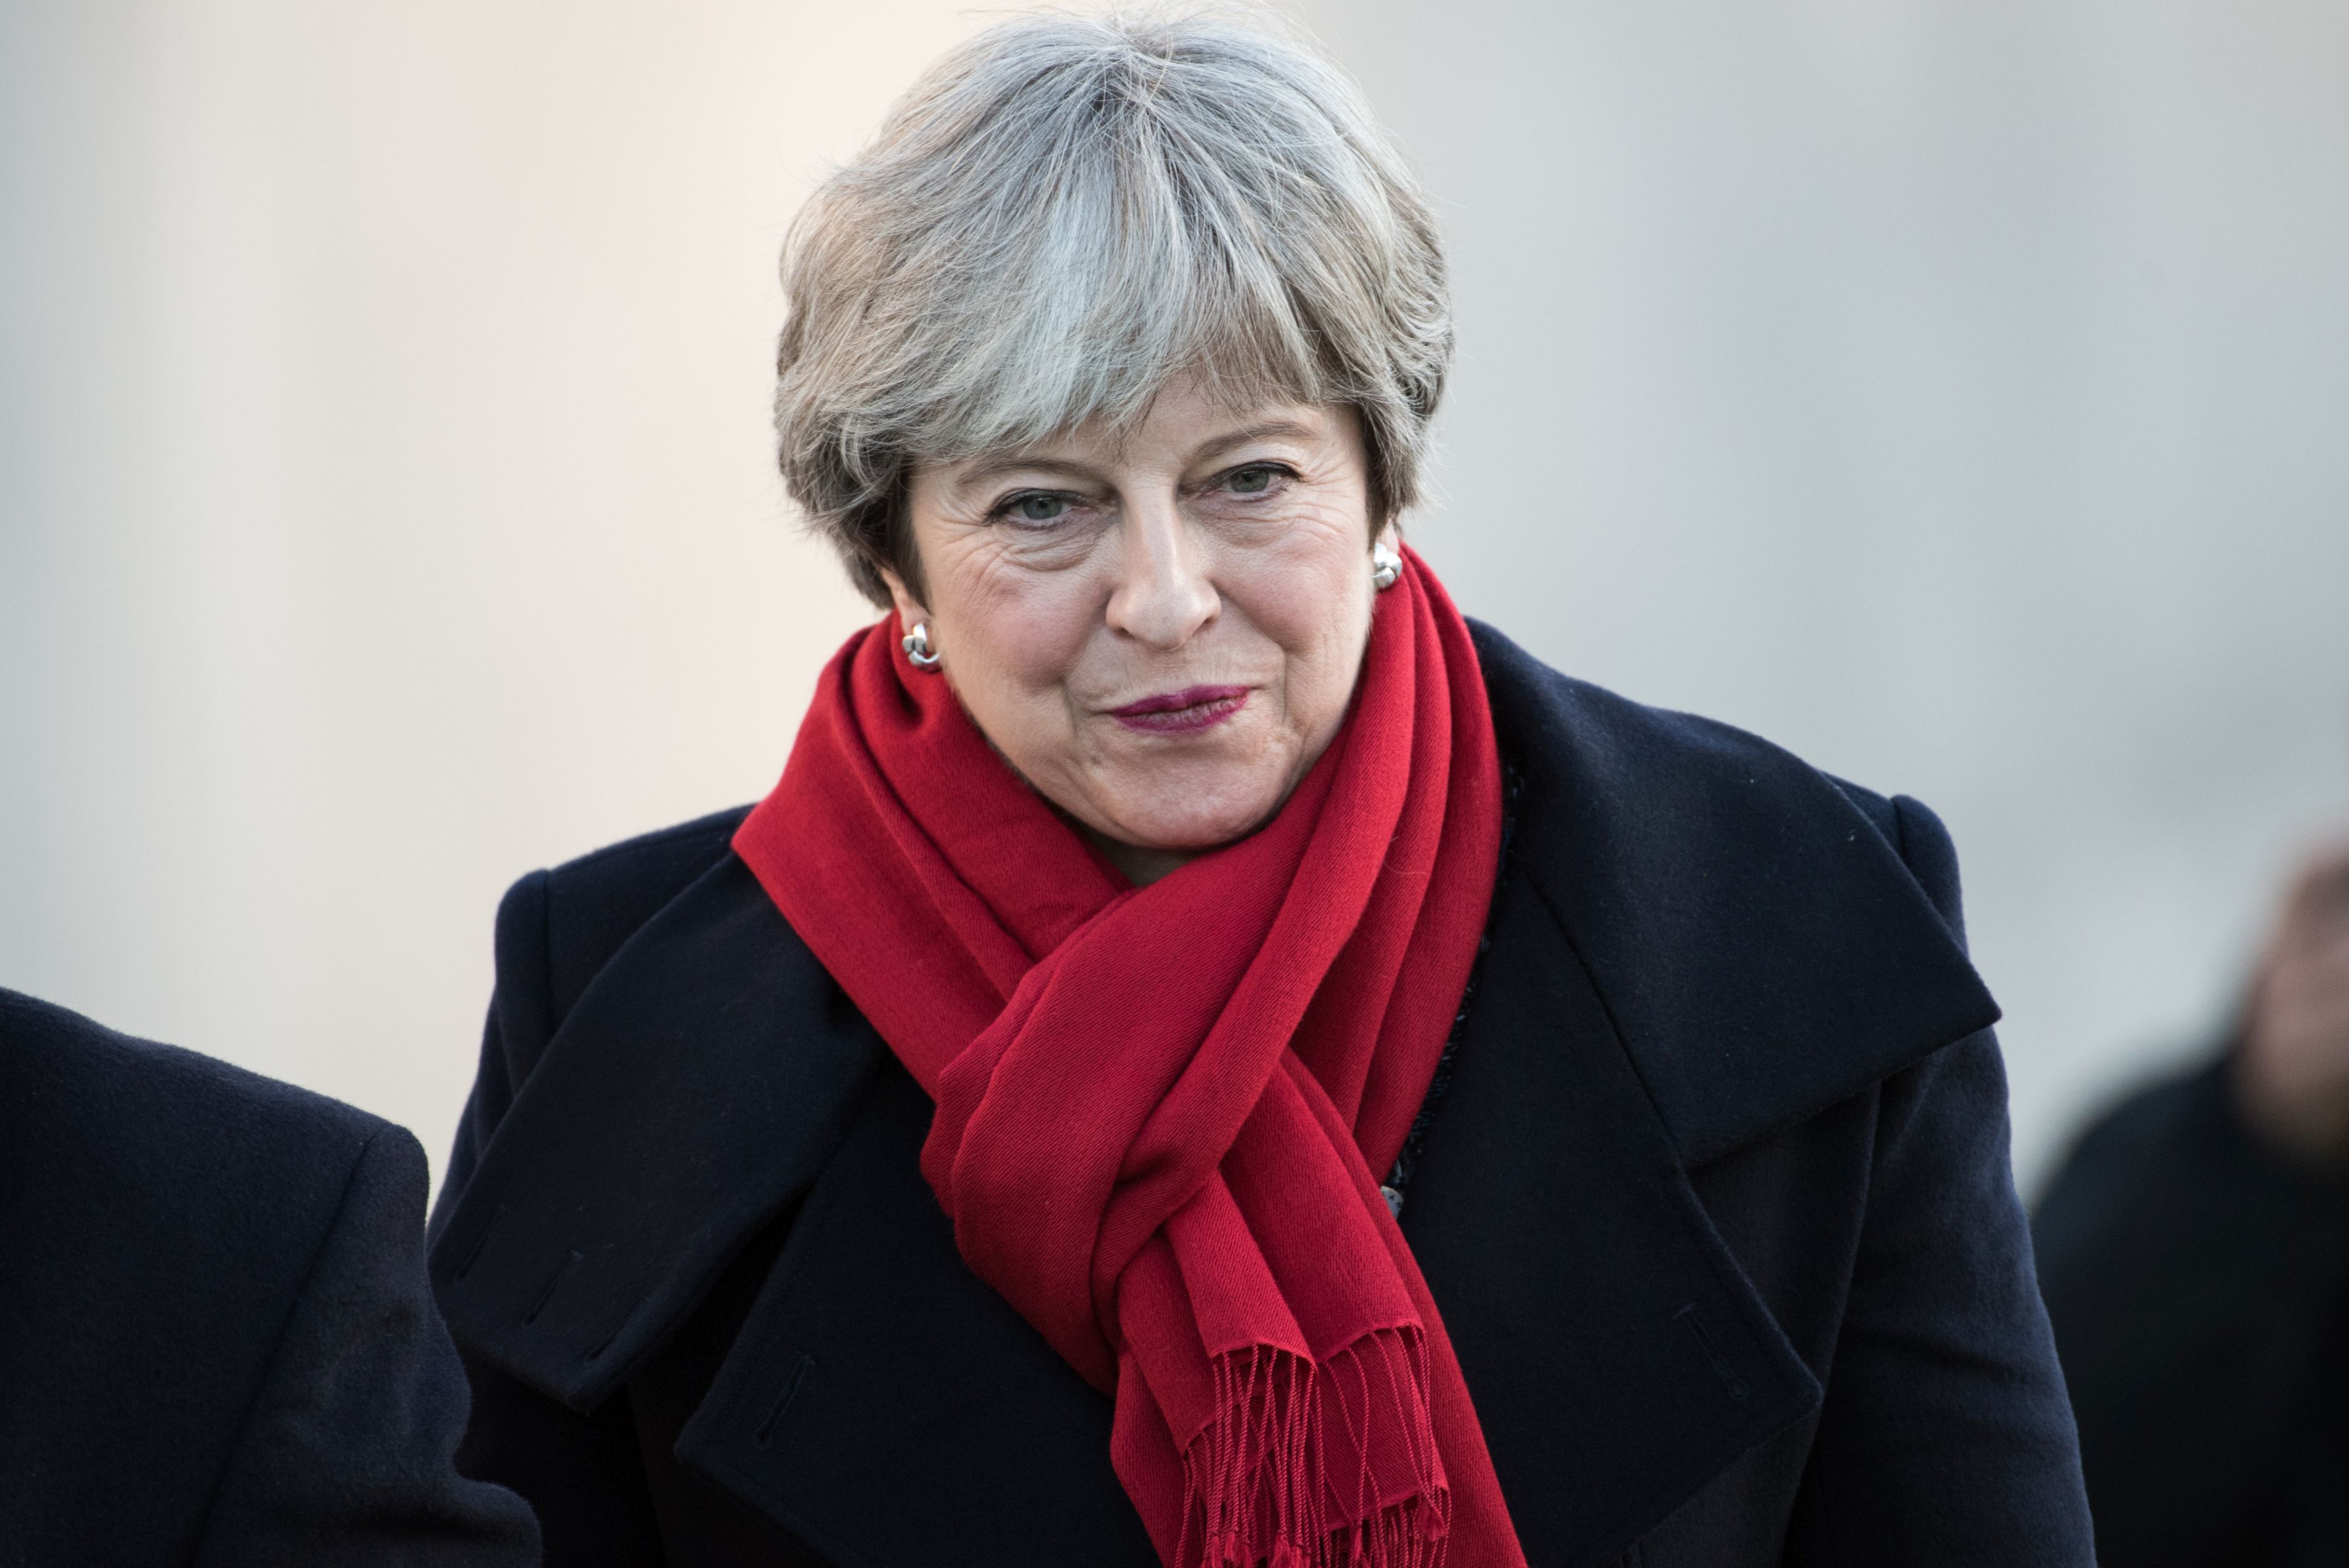 Răsturnare de situaţie în Marea Britanie, imediat după acordul pentru Brexit: Theresa May ar putea primi votul de neîncredere din partea parlamentarilor